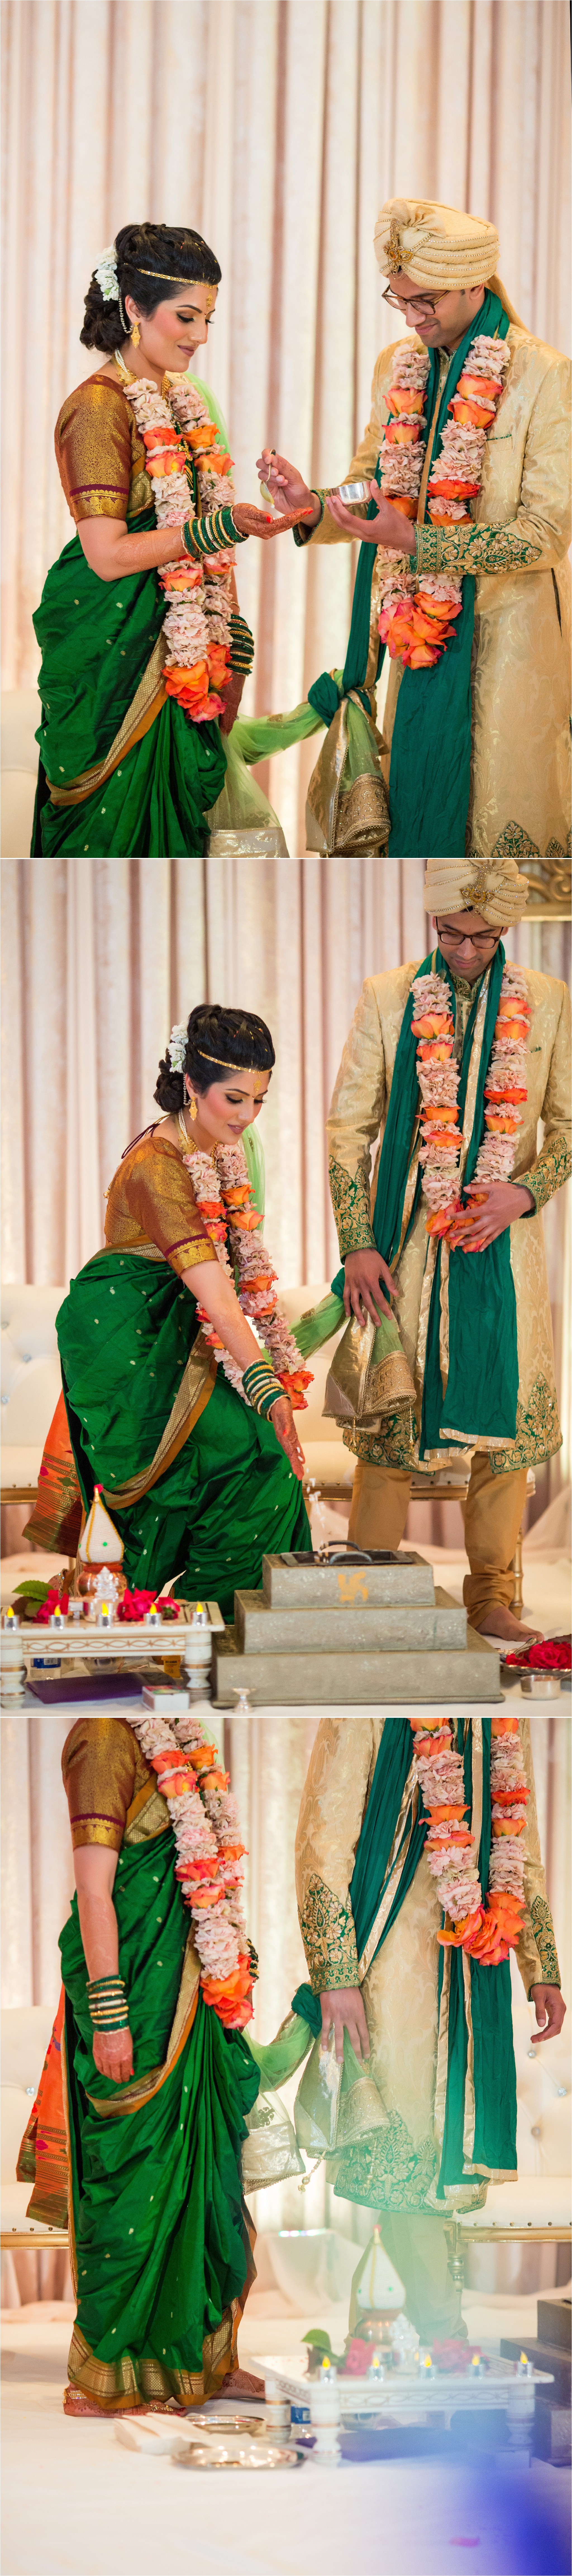 SanJose_Fairmont_Indian_Wedding_0056.jpg